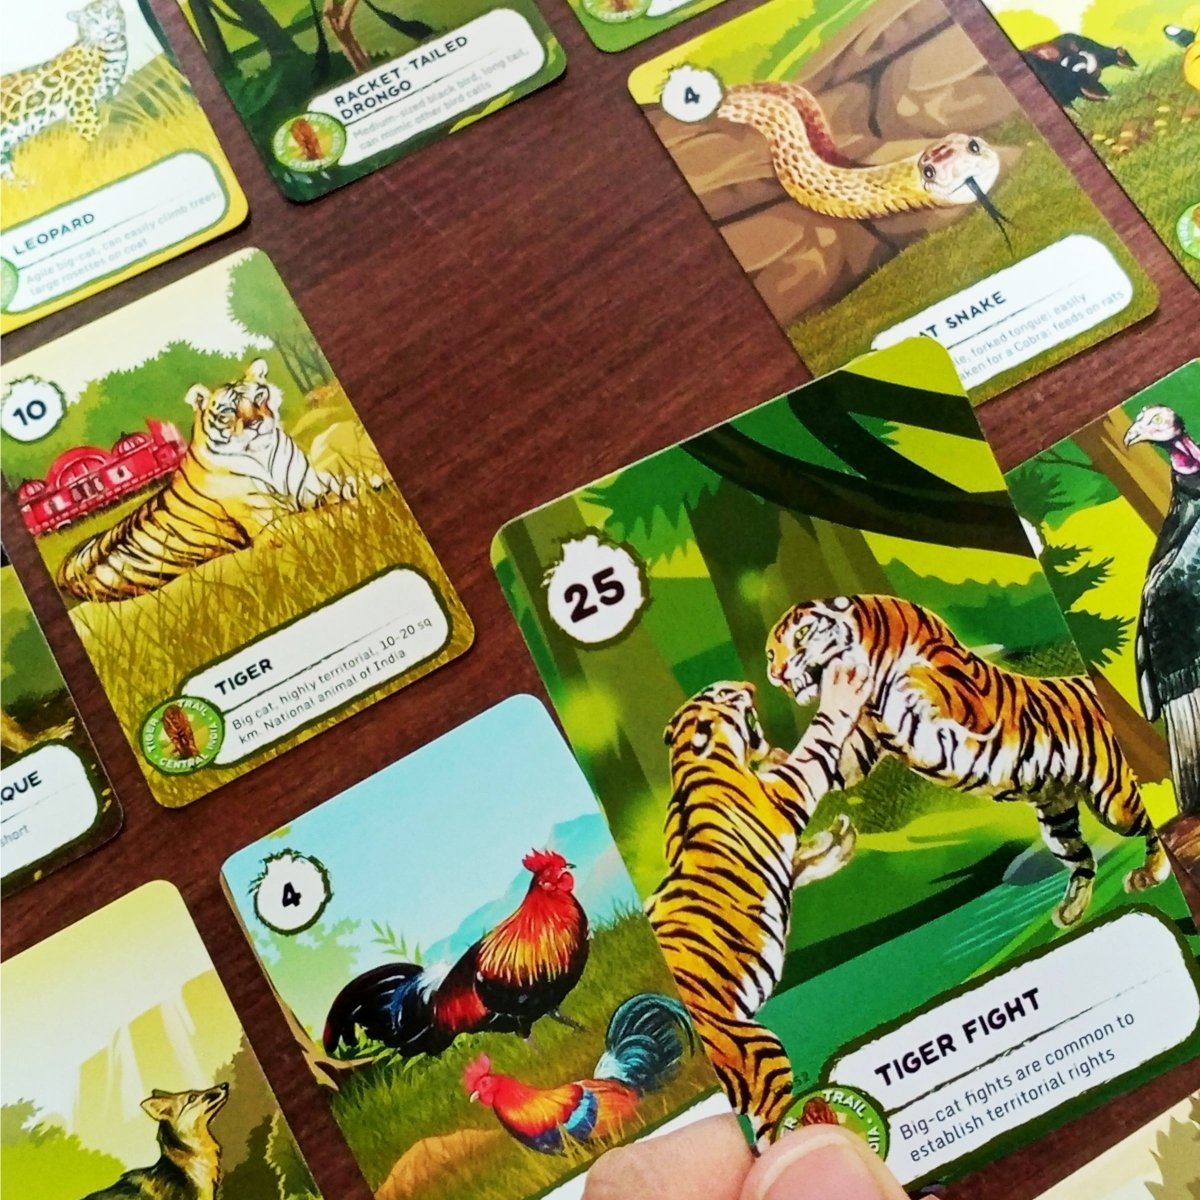 Kaadoo Tiger Trail Classic Educational Adventure Jungle Safari Kids Board Game - TBG-TT